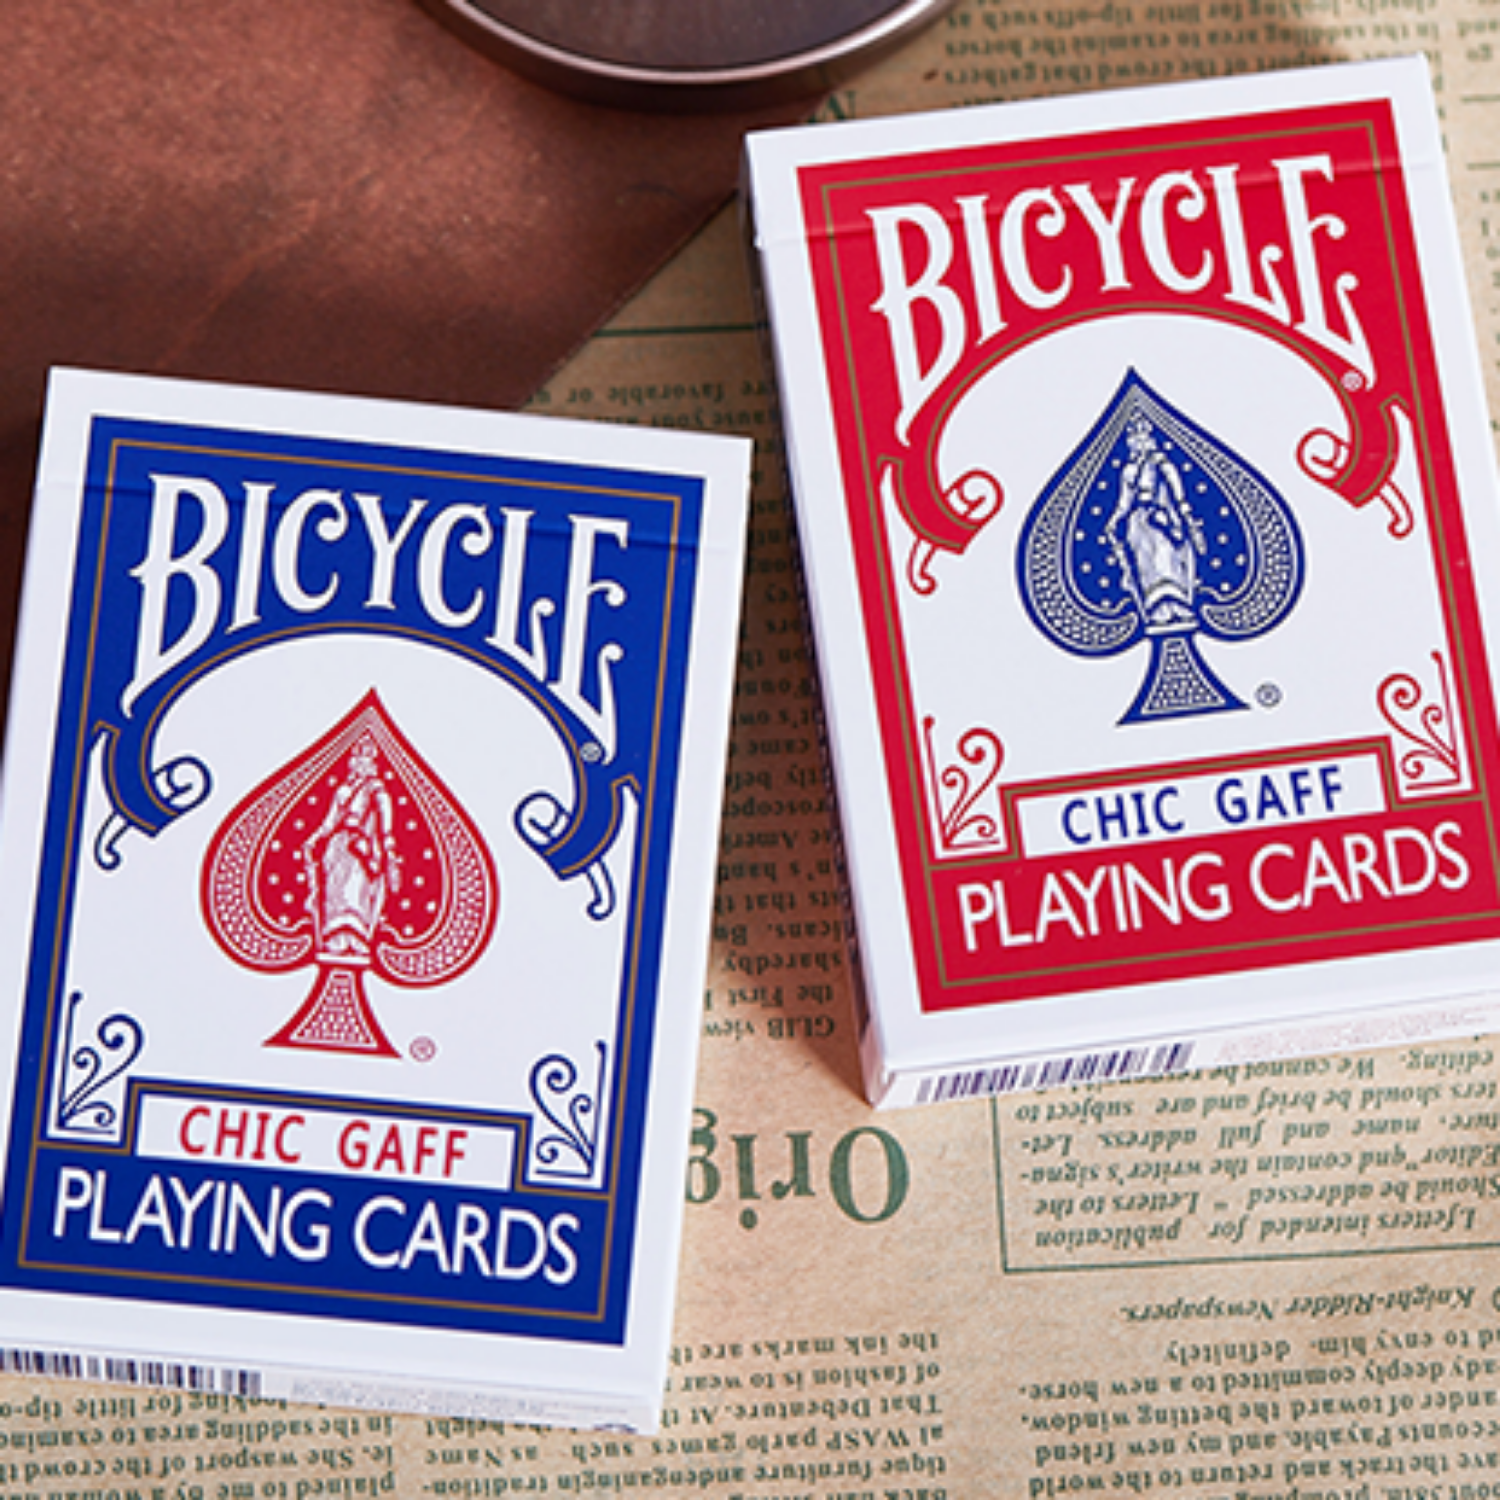 [바이시클 가프덱/블루] Bicycle Chic Gaff (Blue) Playing Cards 30종이상의 트릭이 담겨있으며 온라인해법이 제공됩니다.